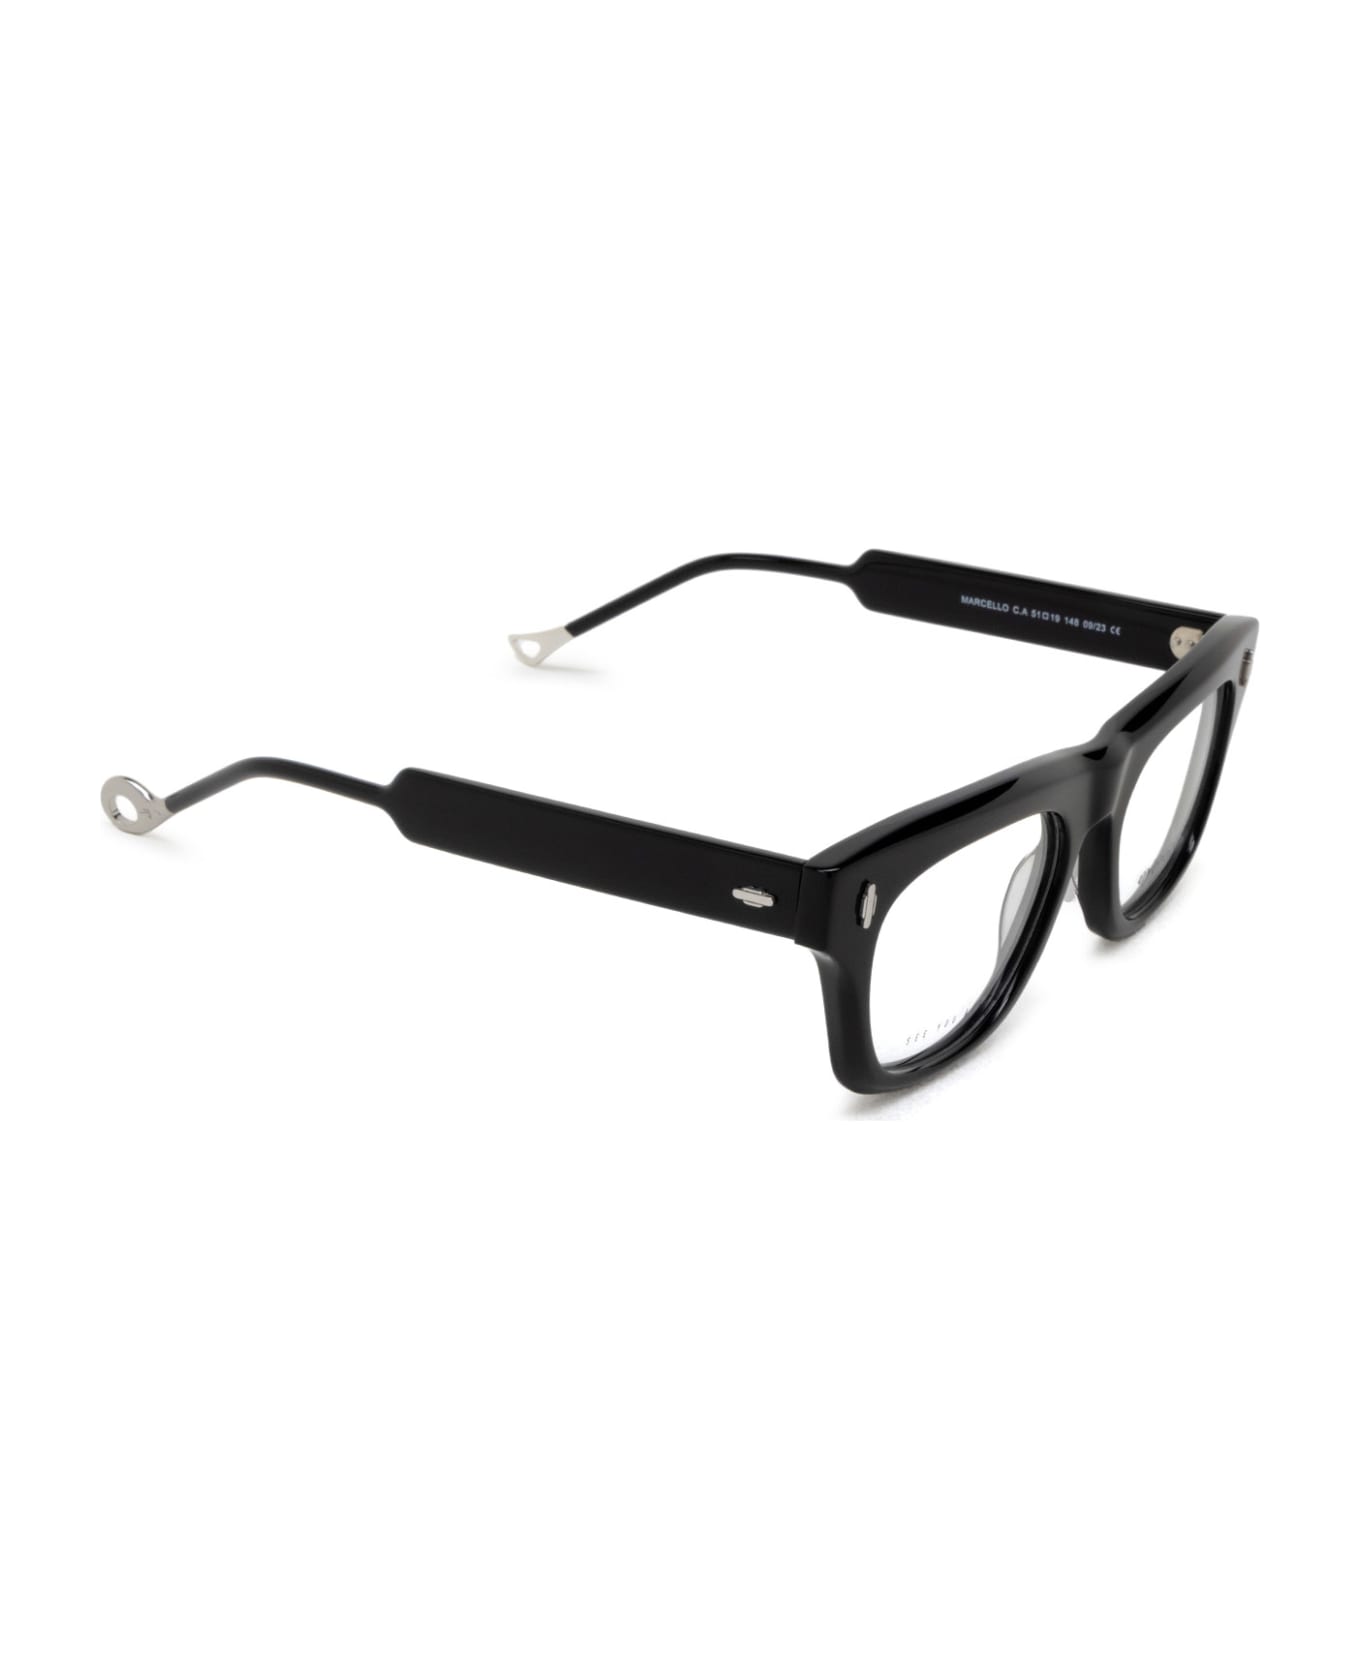 Eyepetizer Marcello Black Glasses - Black